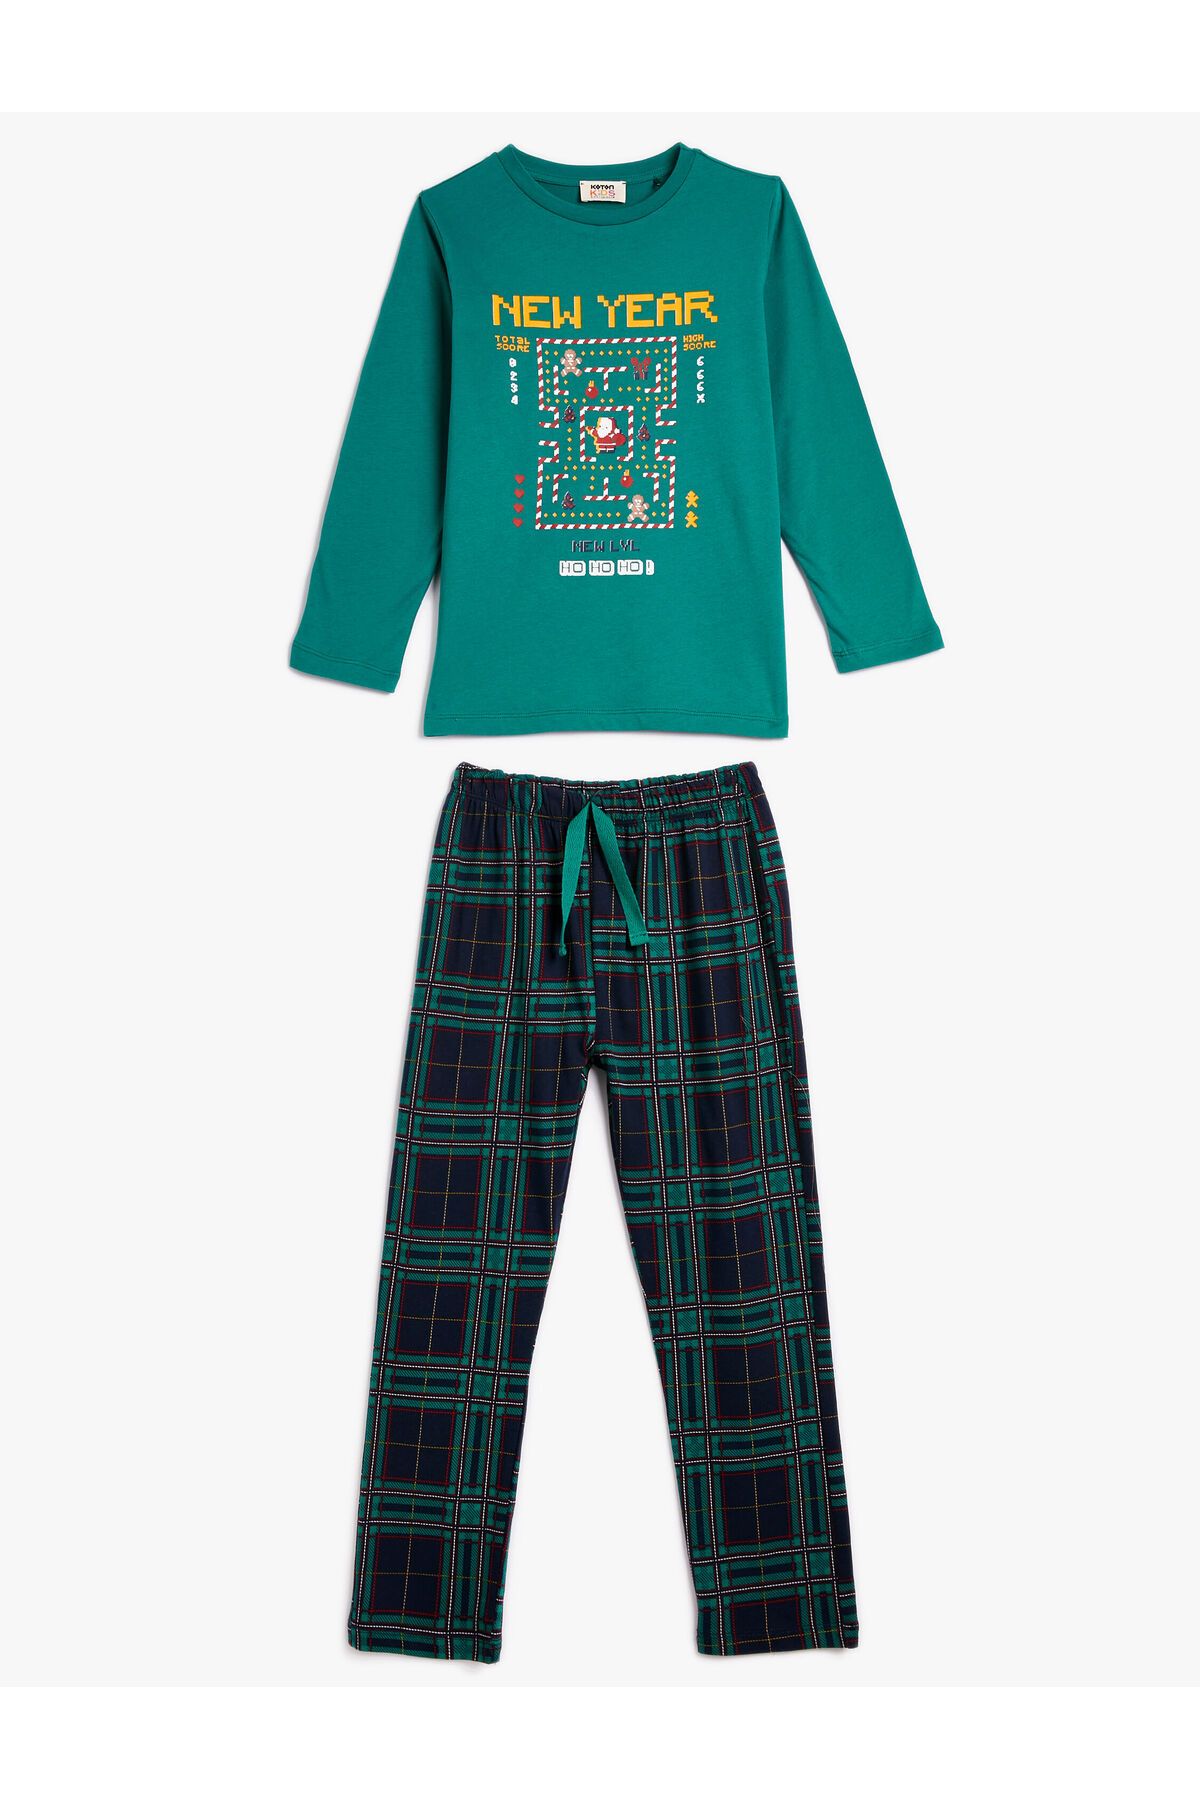 Koton Yılbaşı Temalı Pijama Takımı Baskılı Uzun Kollu Pamuklu